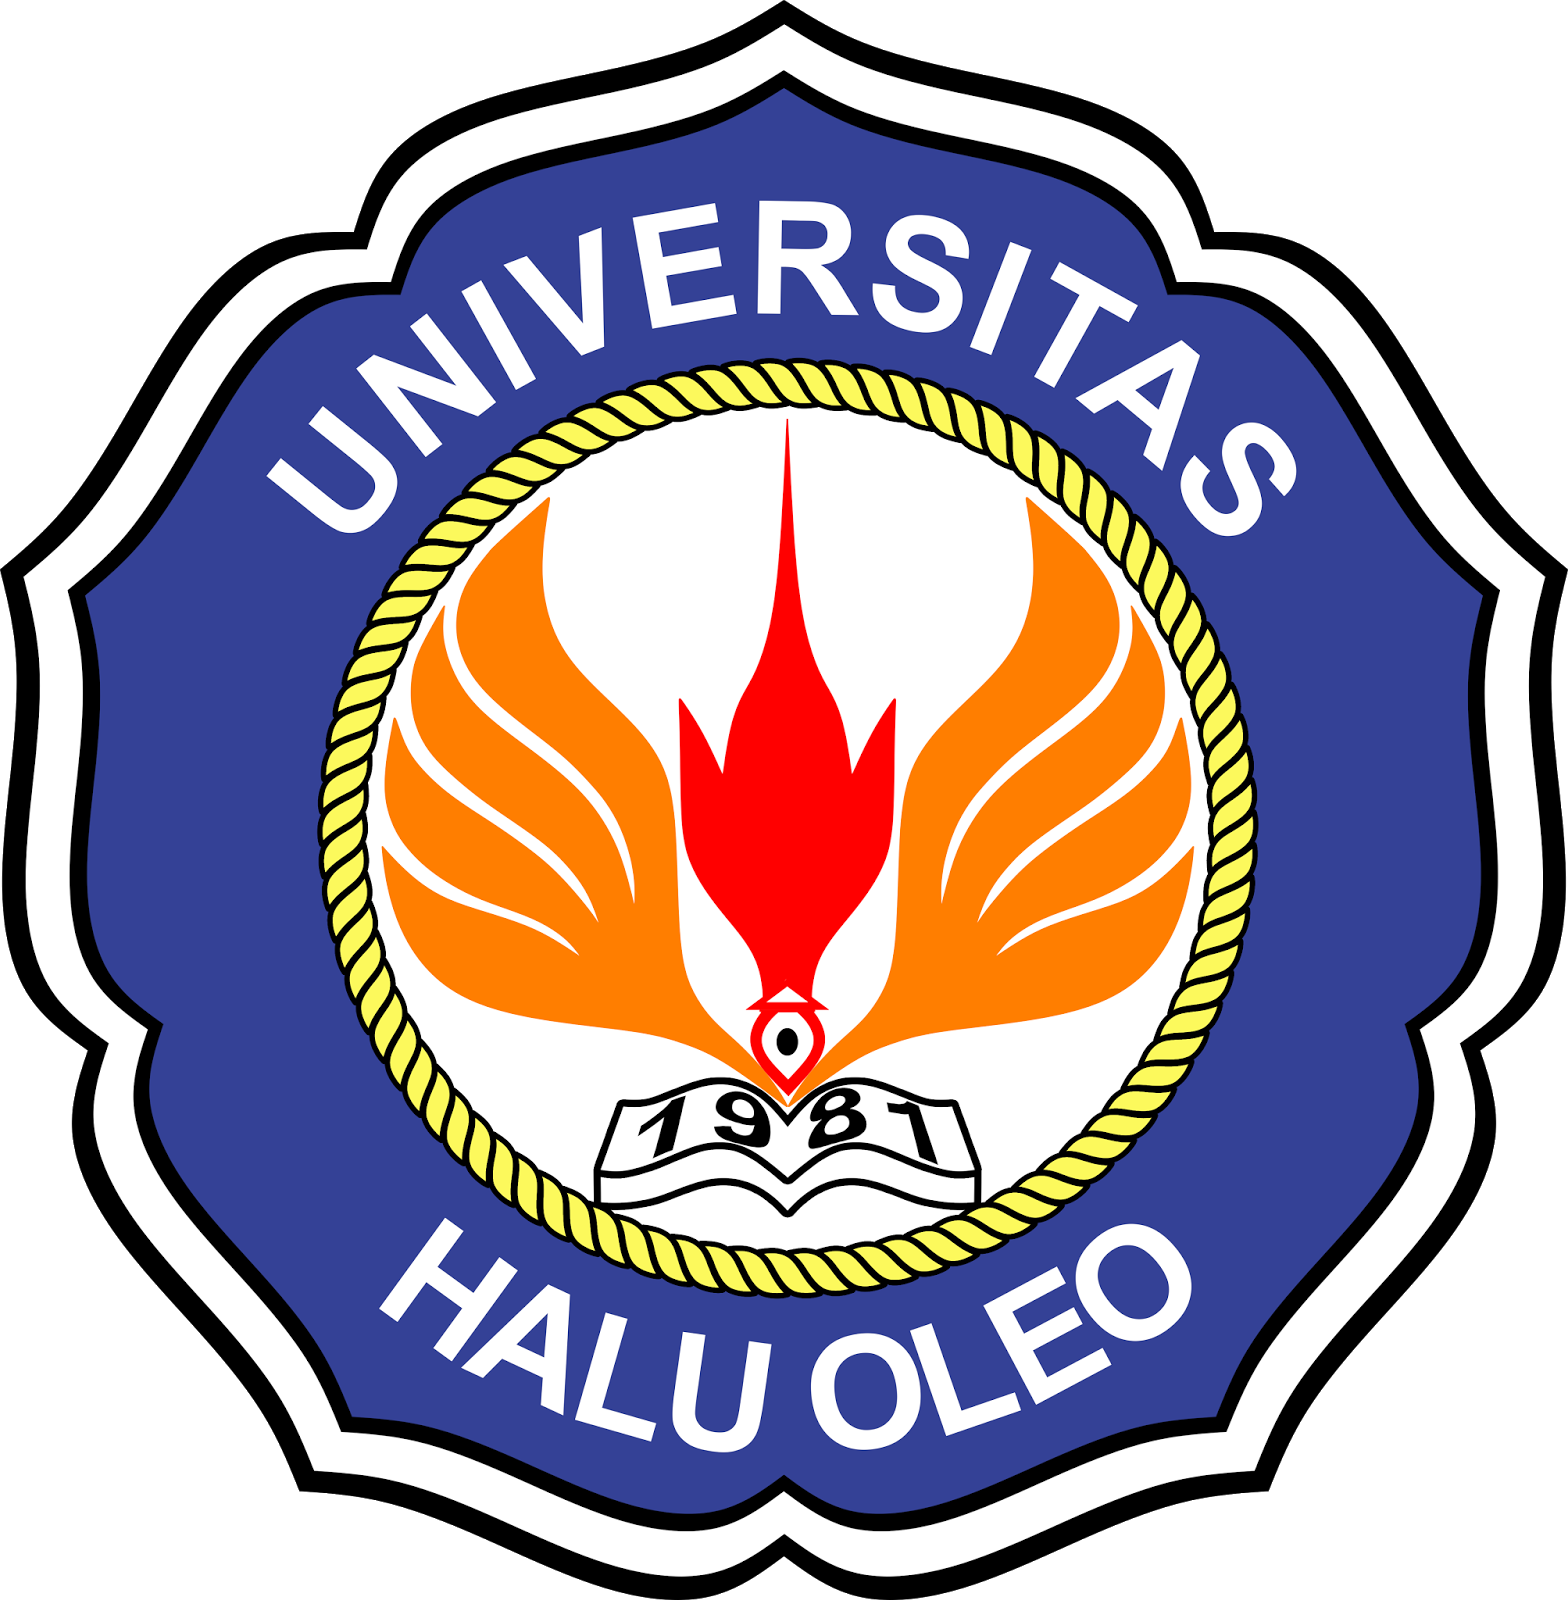 Logo Baru Universitas Haluoleo (Unhalu) - Kumpulan Logo Lambang ...